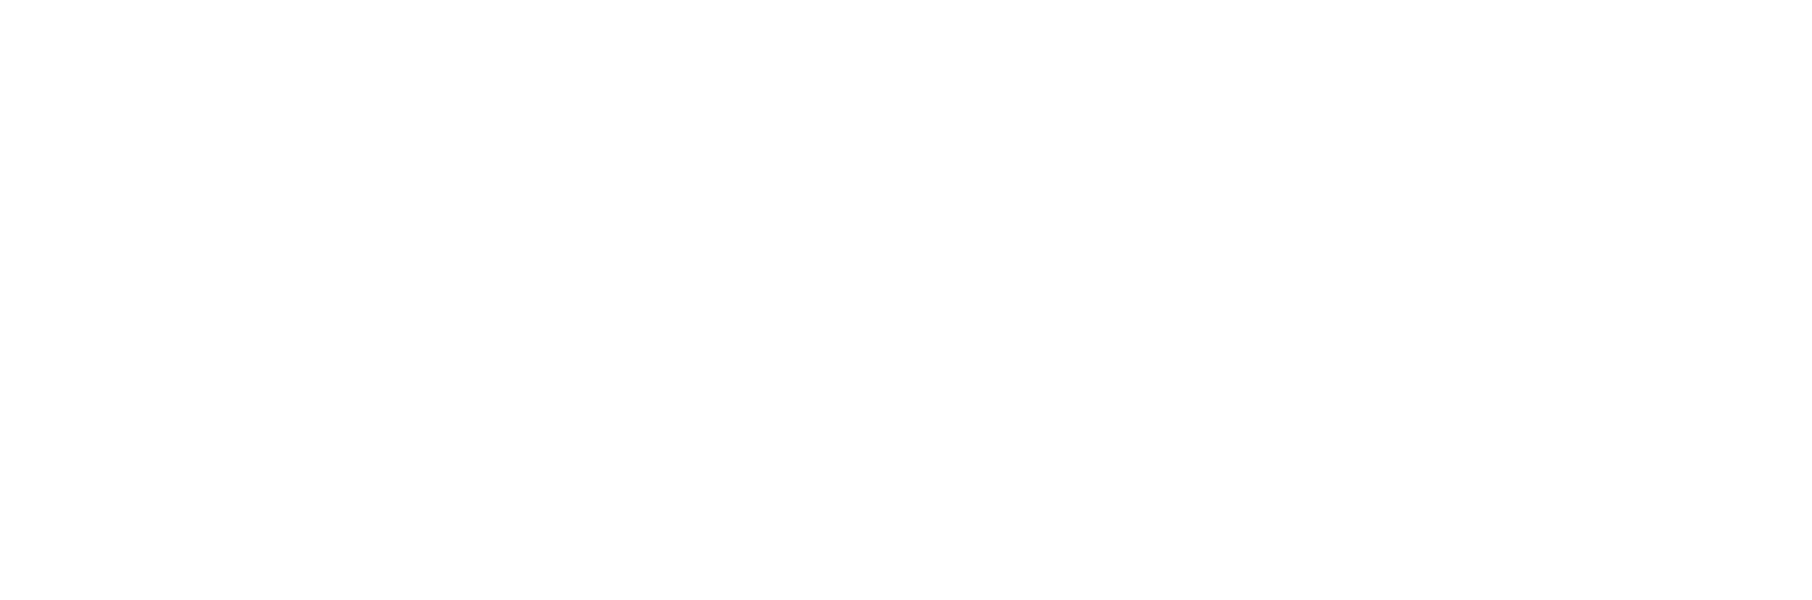 アニメ「銀魂」初の劇伴ライブ
2024年2月11日(日) Zepp DiverCity(TOKYO)で開催決定！
迫力の生演奏でロックに盛り上がれ！
※「劇伴」とは、作中で使用されている背景楽曲(BGM)のことです！